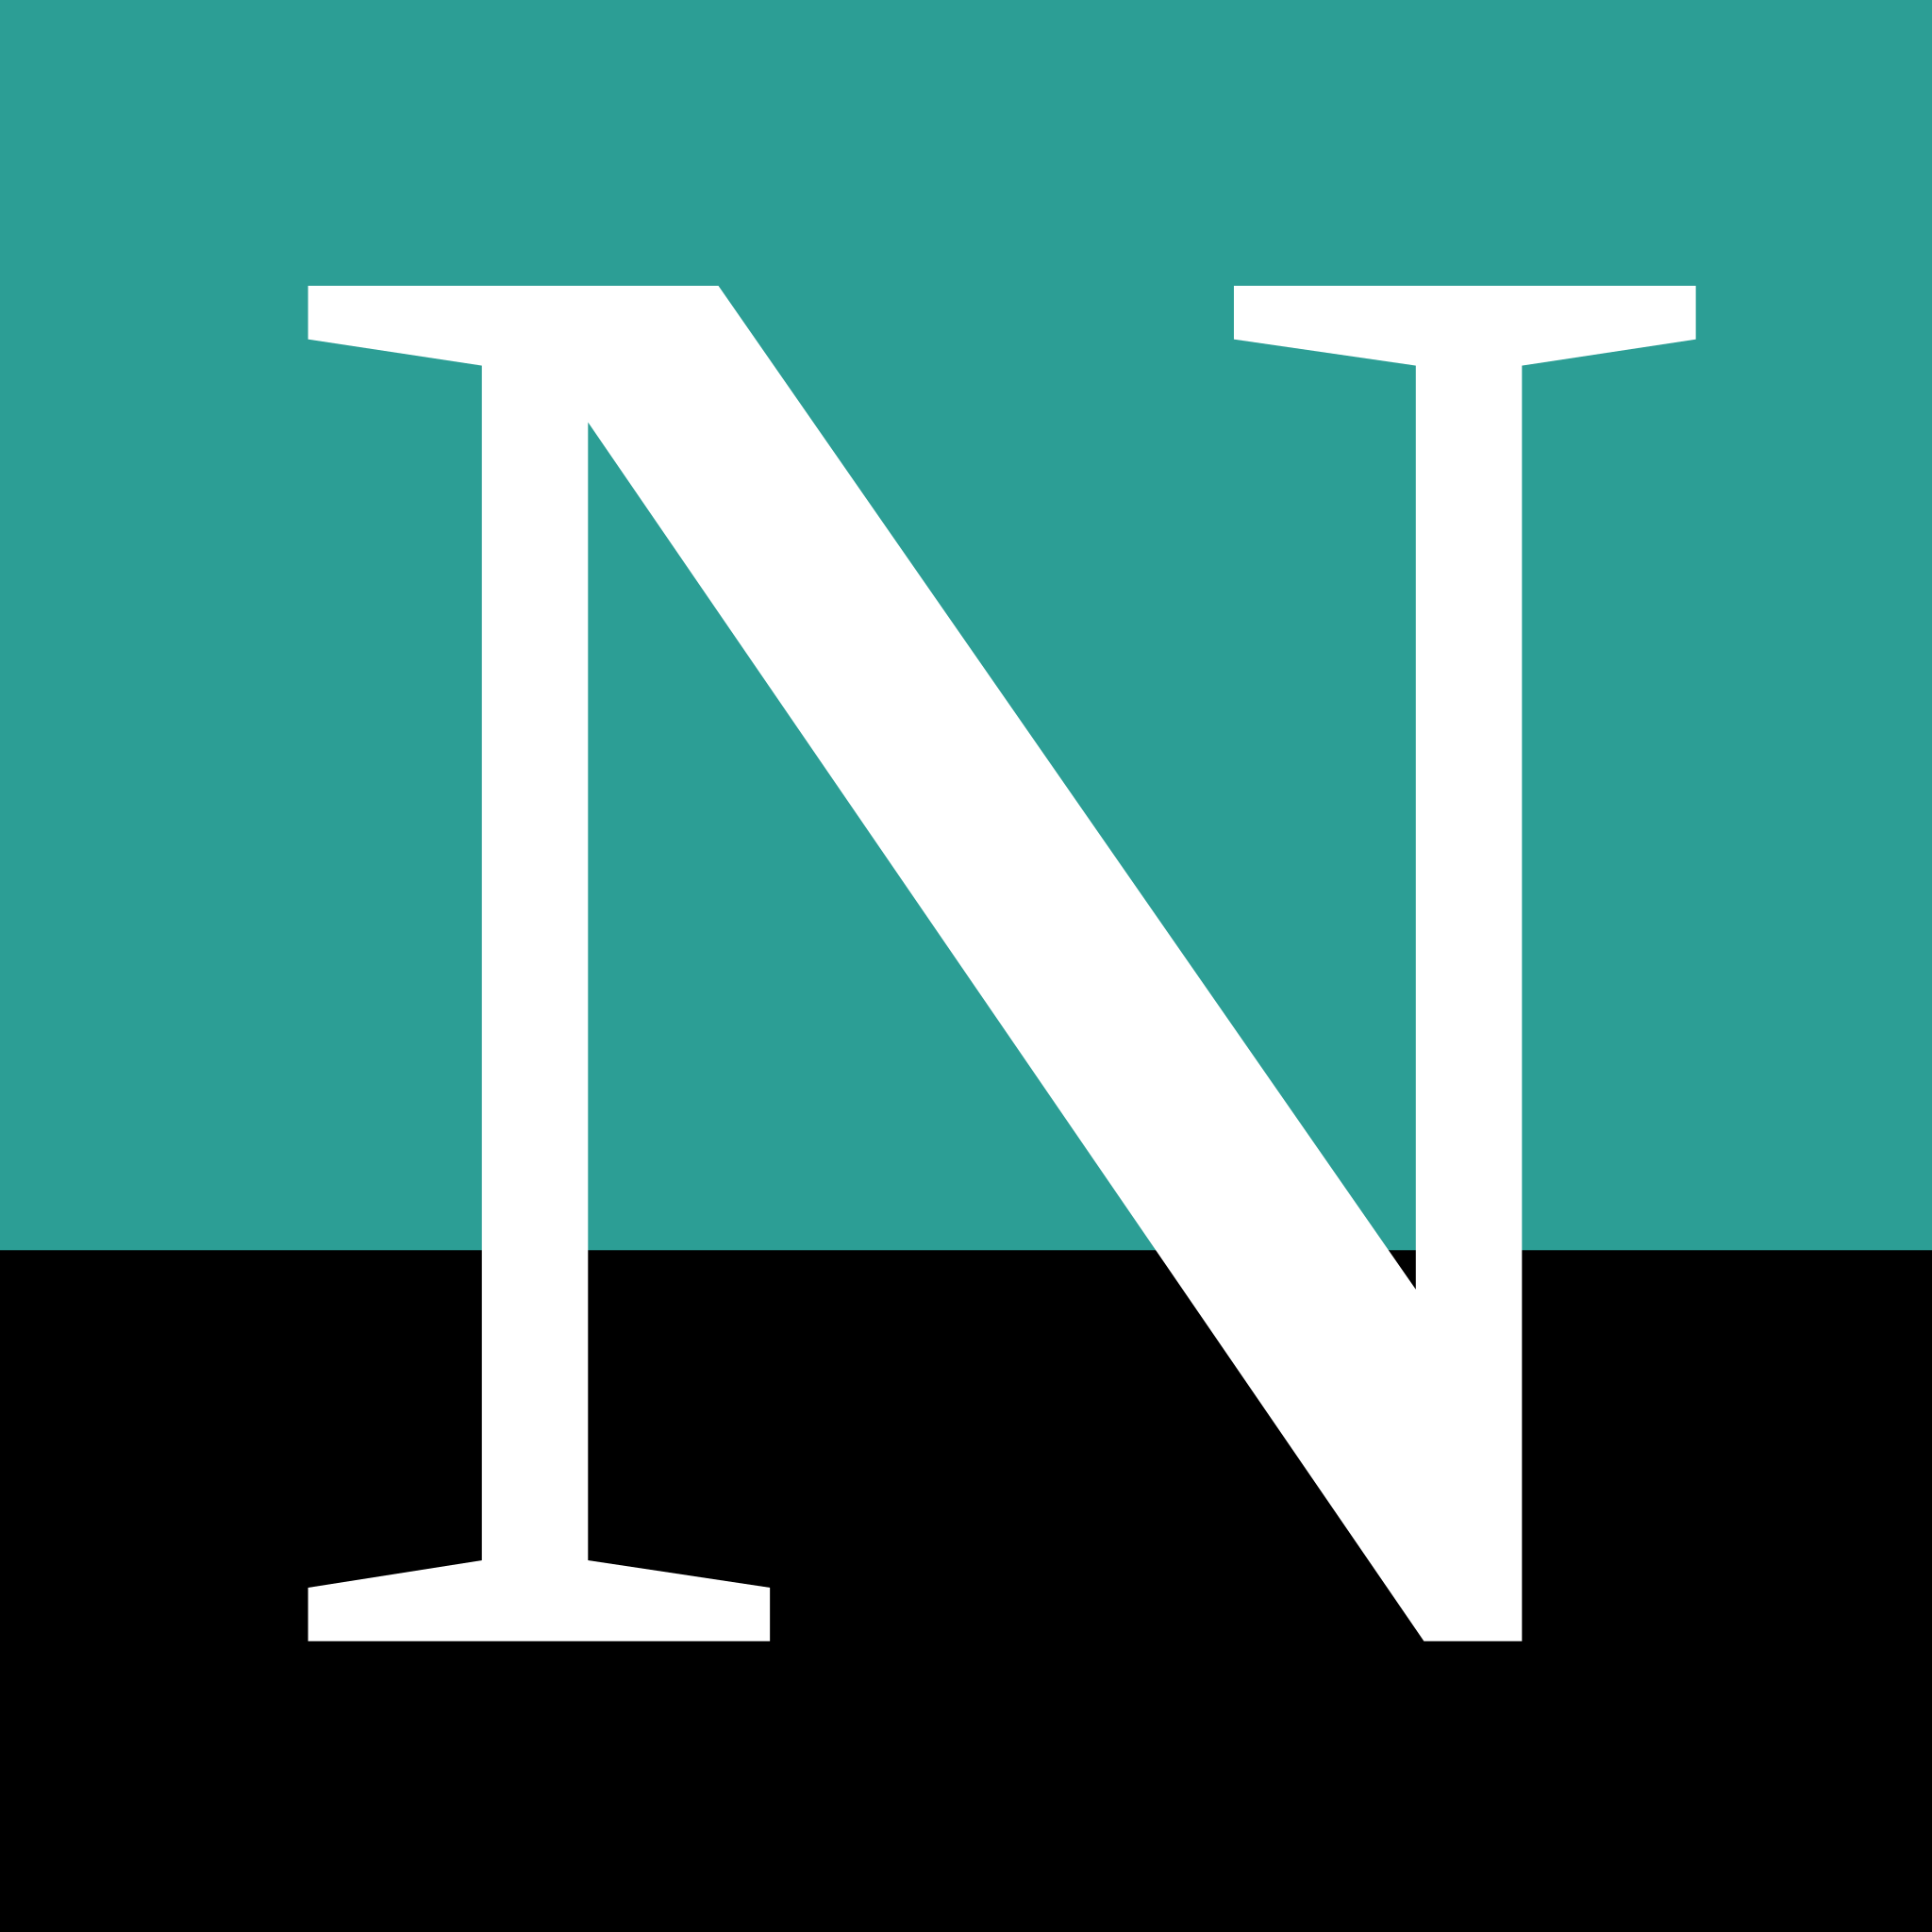 Названия на букву n. Логотип n. Буква n лого. Буква n на зеленом фоне. Буква n на черном фоне.